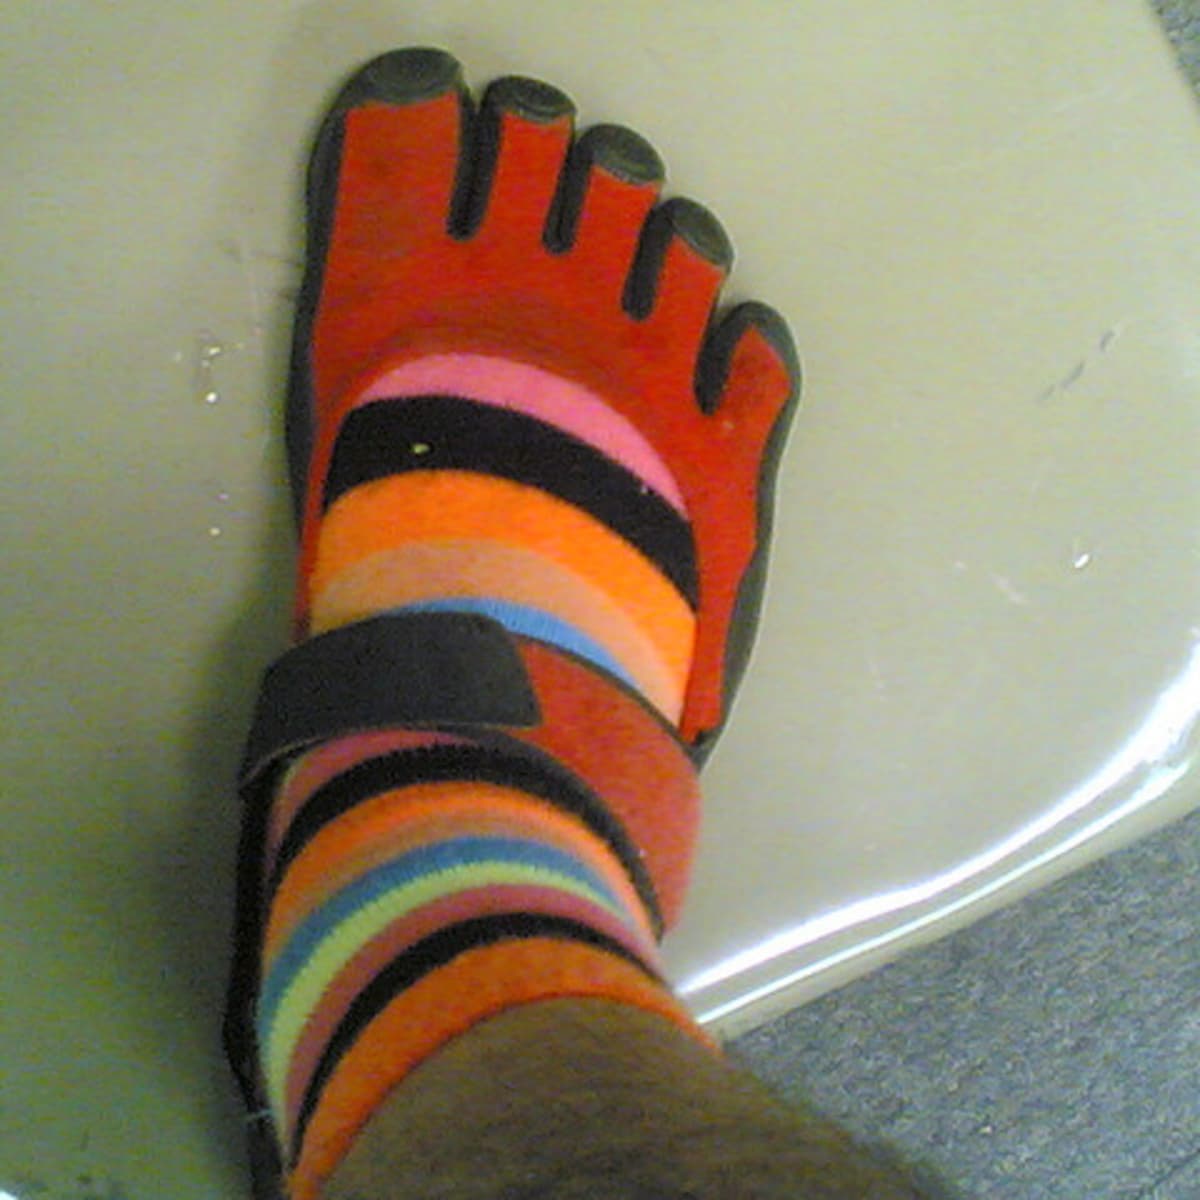 toesox Non Slip Ankle Half Toe Grip Socks - Pilates Socks with Grips for  Women, Yoga Socks, Barre Socks, Dance Socks